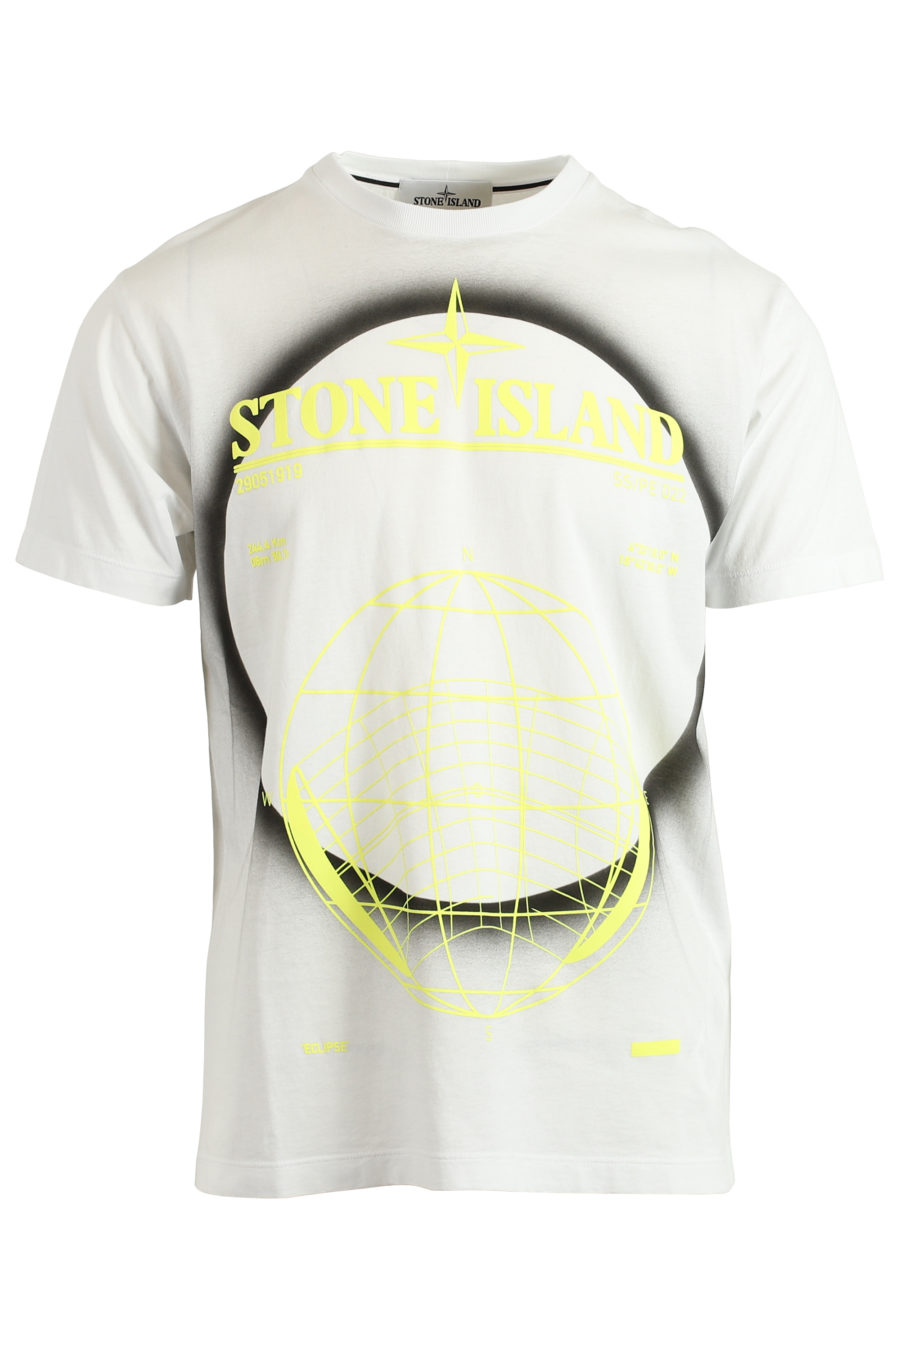 T-Shirt weißes Logo fluorgelb - IMG 3711